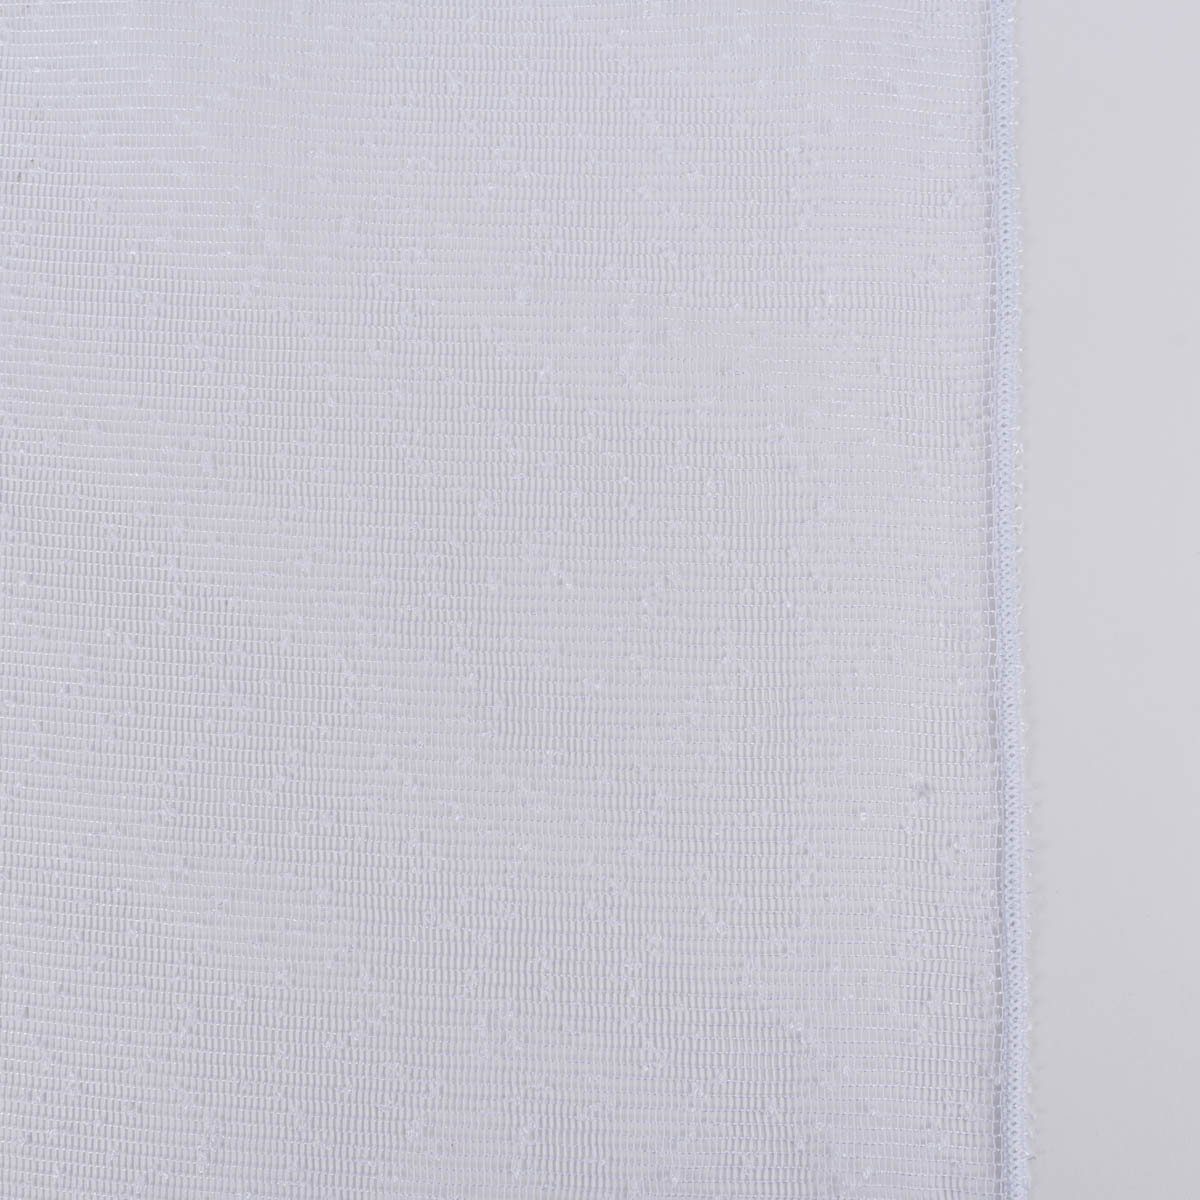 Meterware Rasch Textil Gardinenstoff Stores May Gitterstruktur weiß 280cm, leicht perforiert, Polyester, mit Bleiband, pflegeleicht, überbreit | Verdunkelungsstoffe